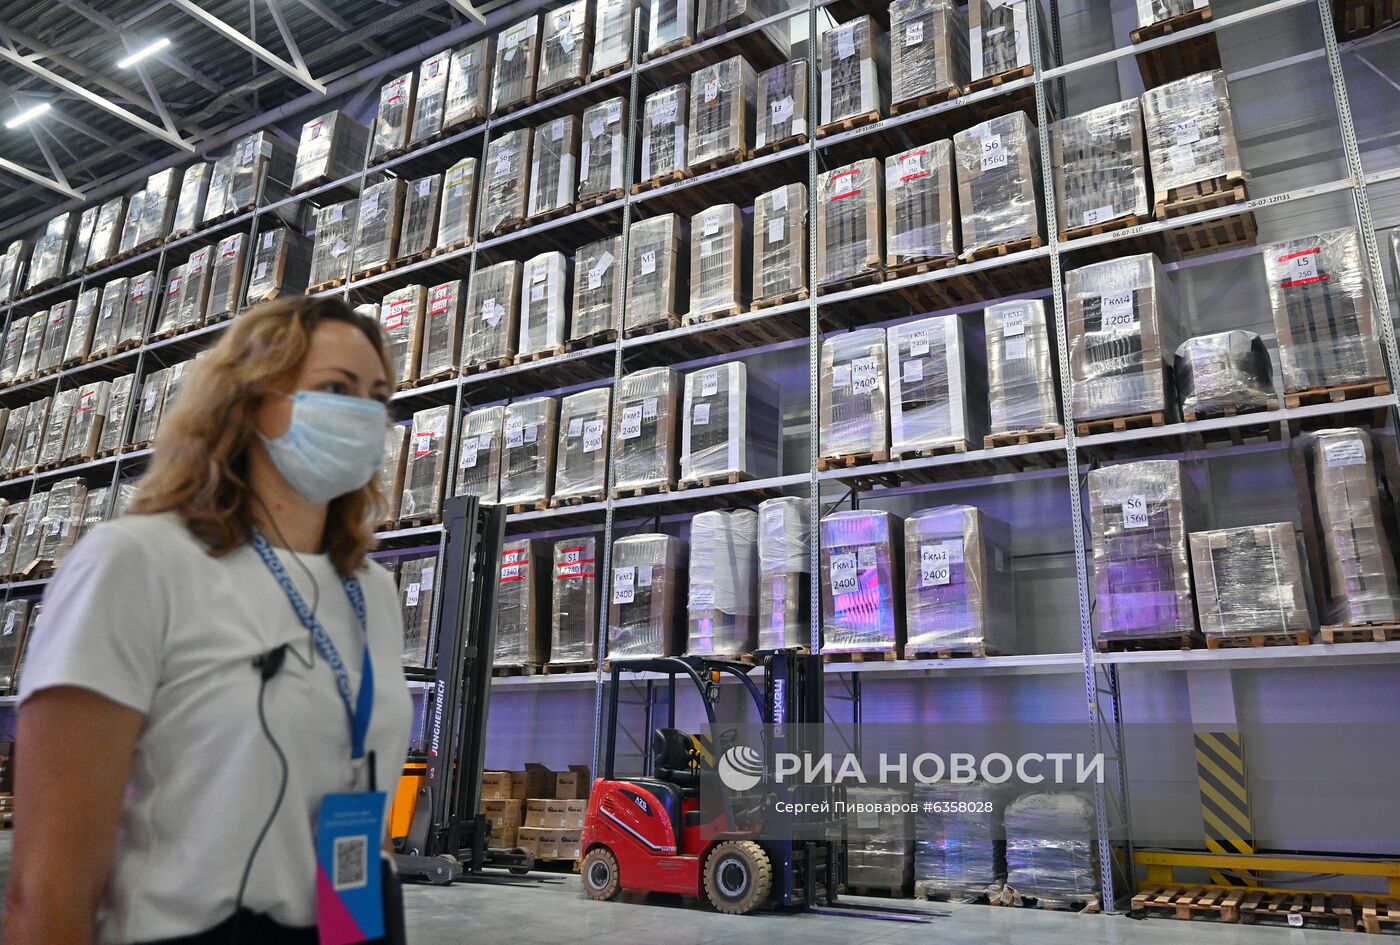 Открытие распределительного фулфилмент-центра OZON в Ростове-на-Дону